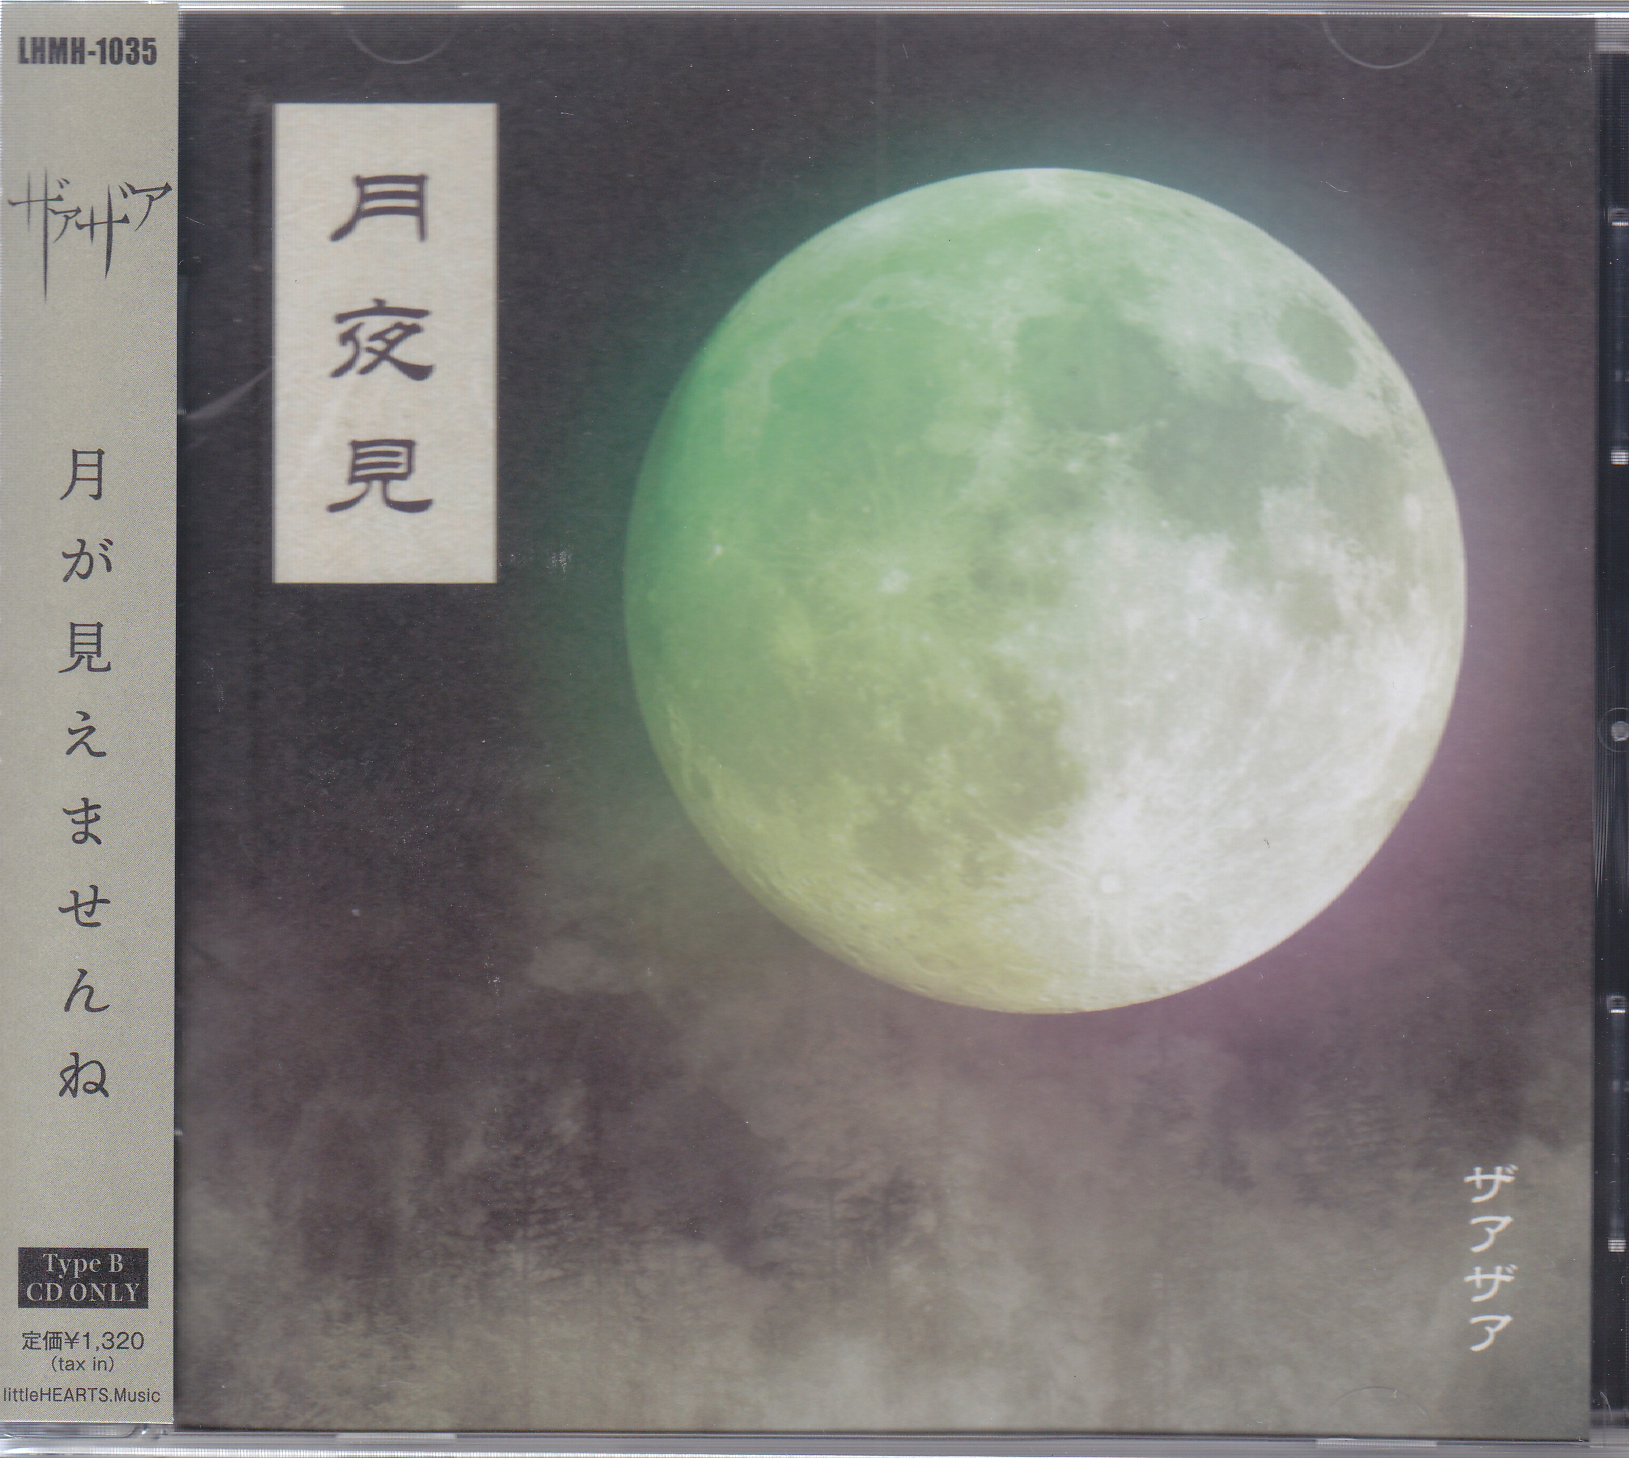 ザアザア ( ザアザア )  の CD 【Type-B】月夜見